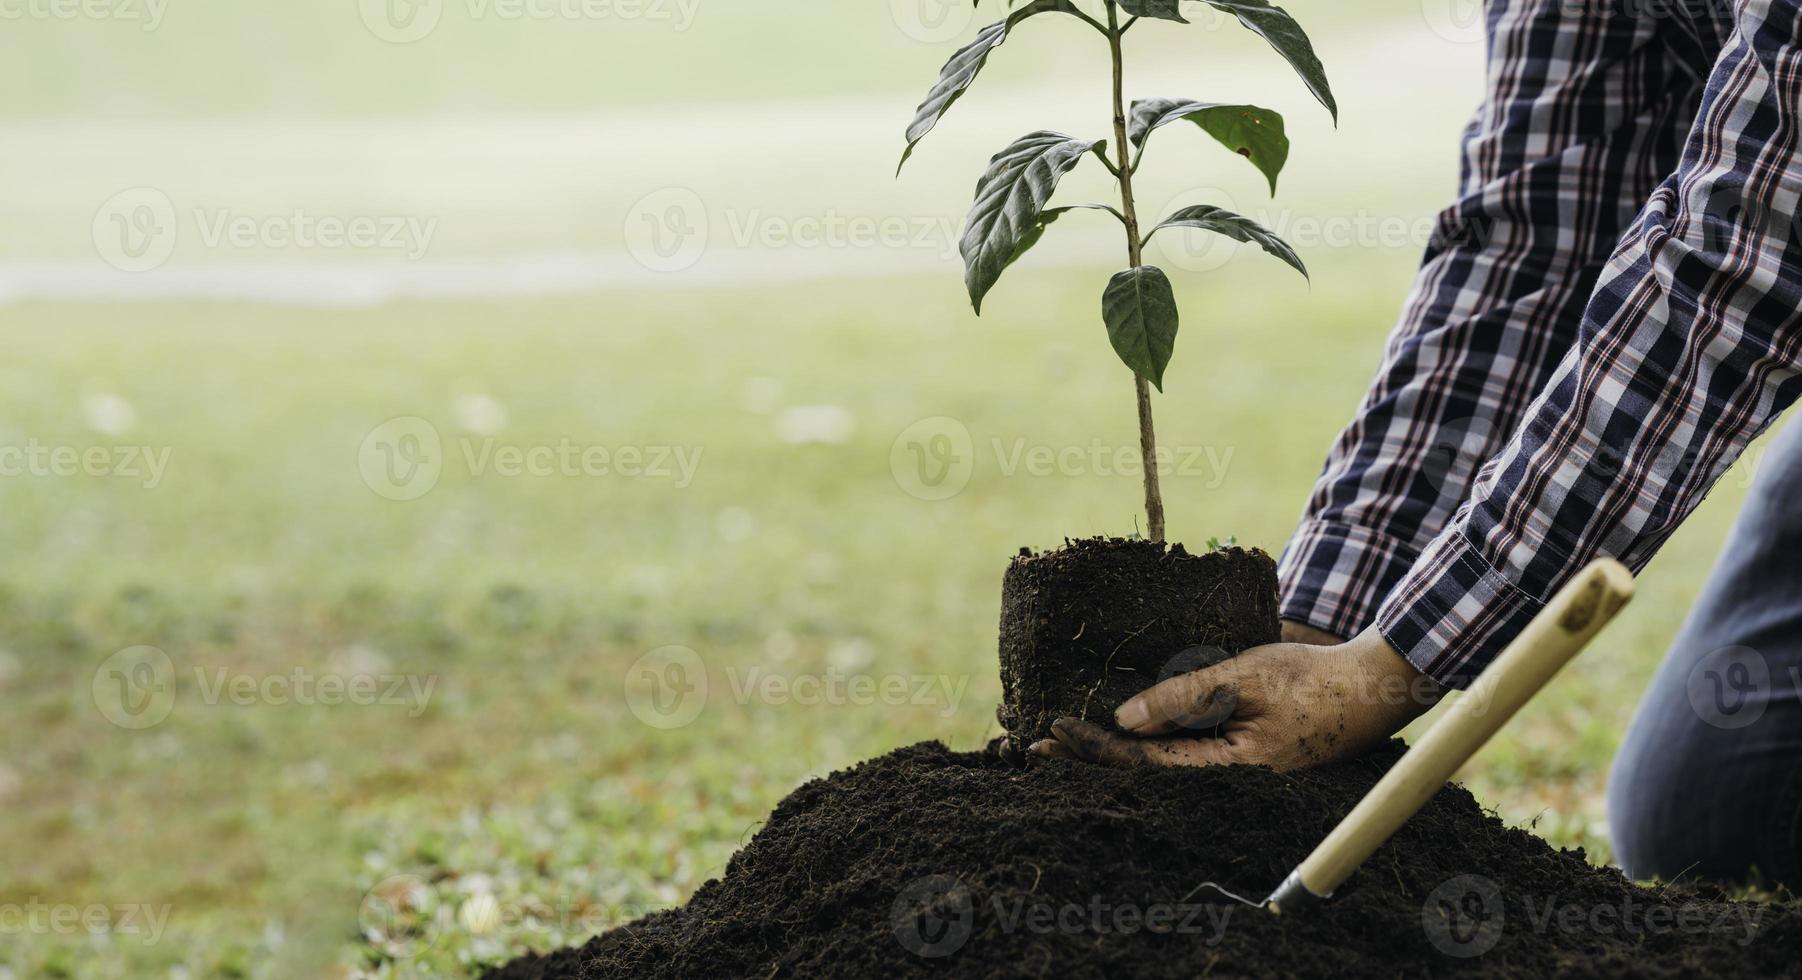 plantando un árbol. cierre al joven plantando el árbol mientras trabaja en el jardín. foto